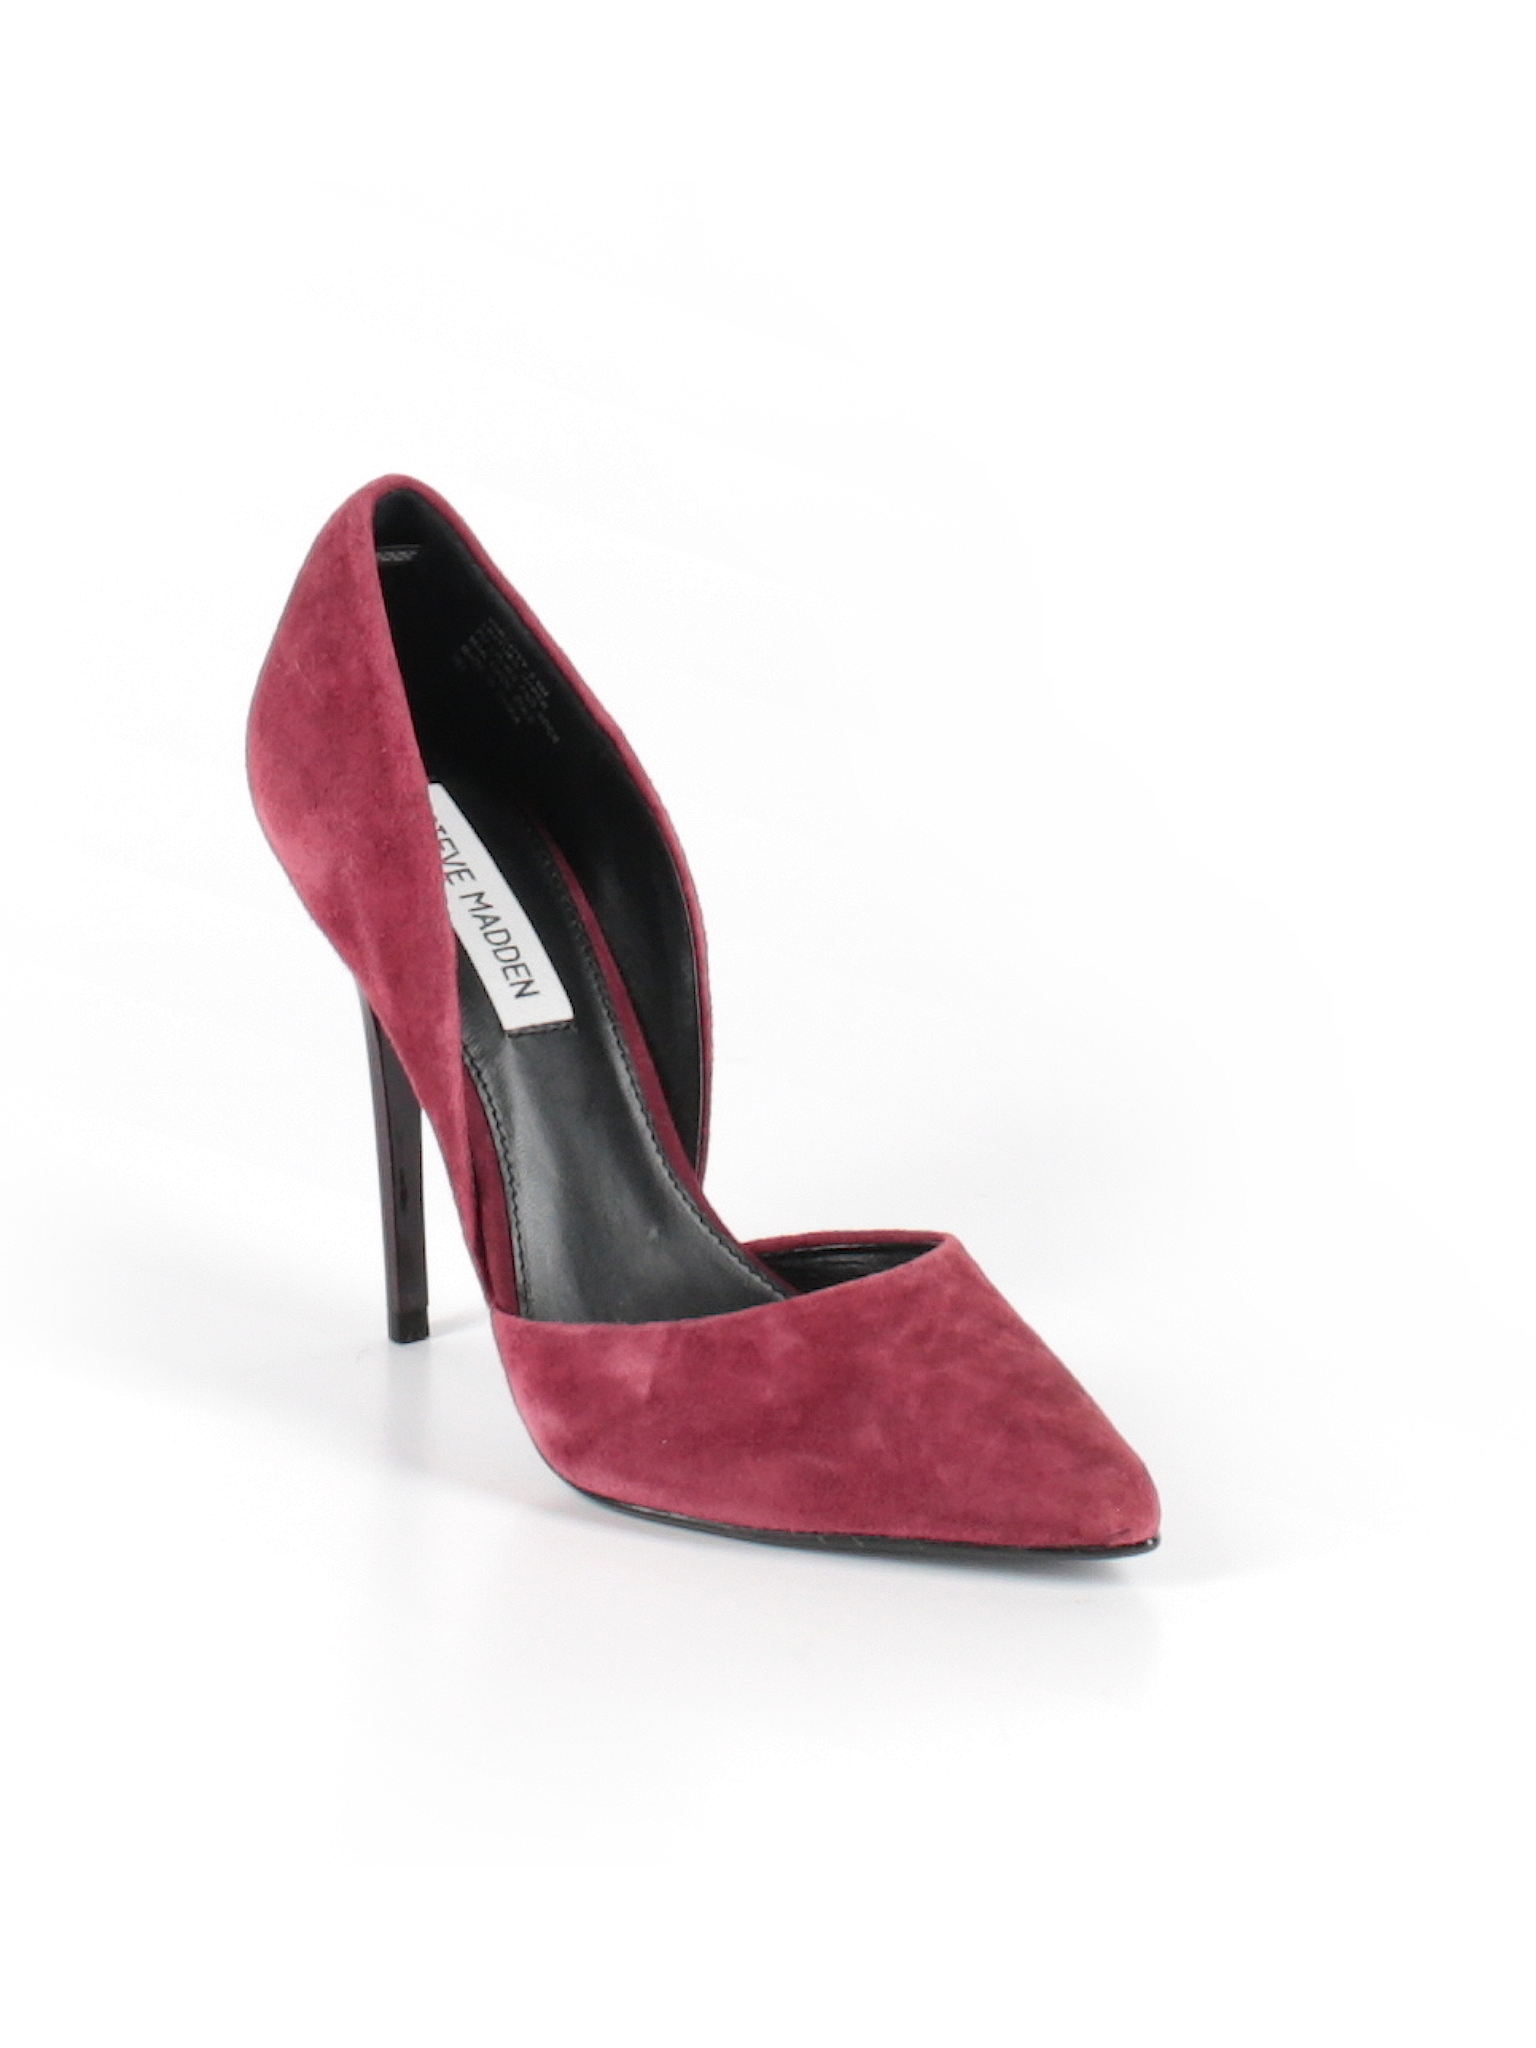 steve madden burgundy heels